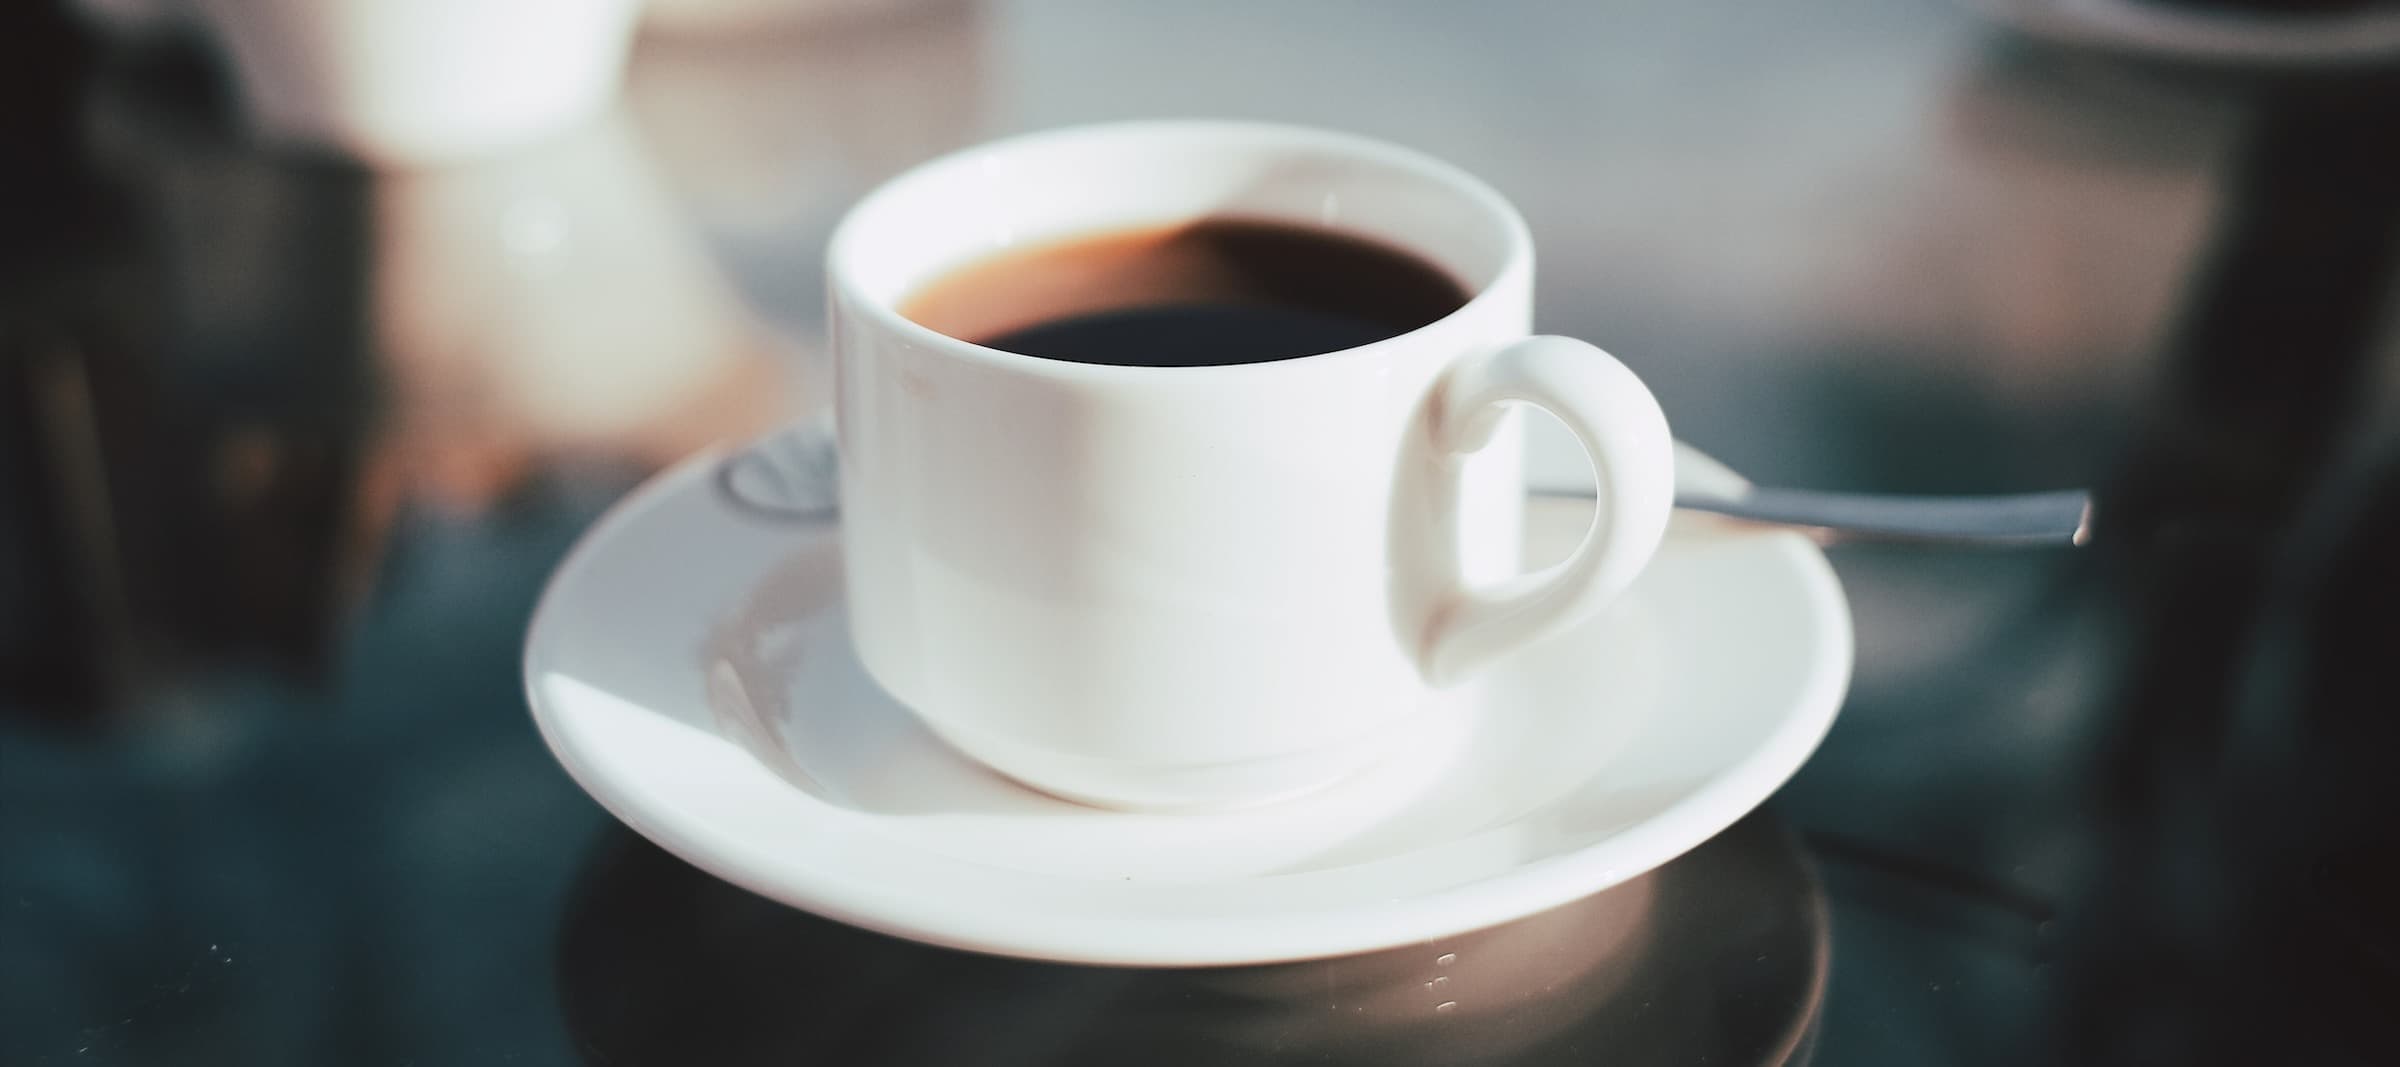 Фото новости: "В российских кофейнях может снизиться качество кофе"